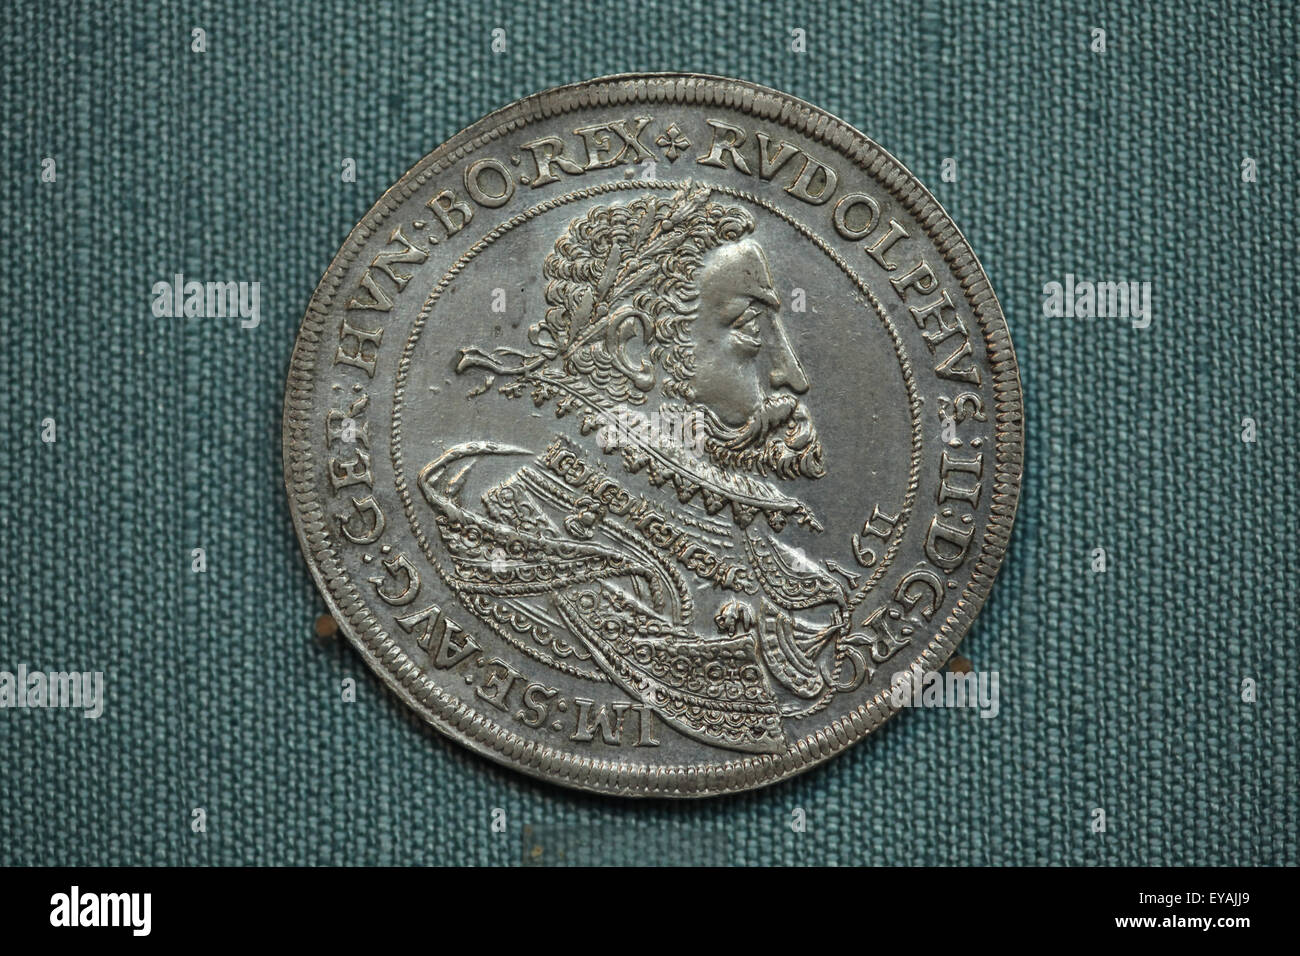 Thaler dell'imperatore Rudolf II. Moneta d'argento coniate nel regno del Sacro Romano Imperatore Rodolfo II di Ensisheim (1611). Kunsthistorisches Museum, Vienna, Austria. Foto Stock